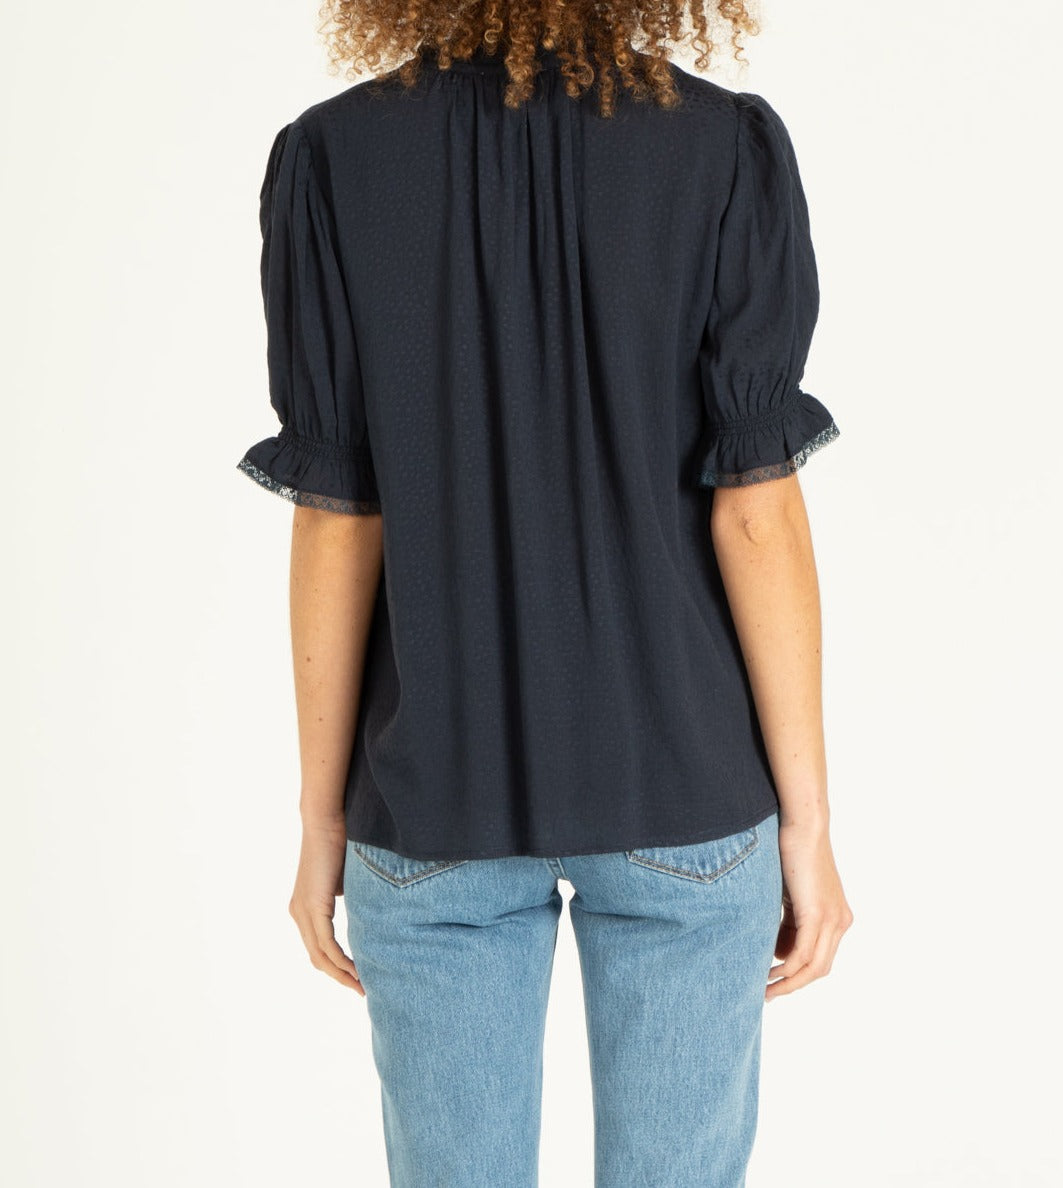 PAISLEE short sleeve blouse in black